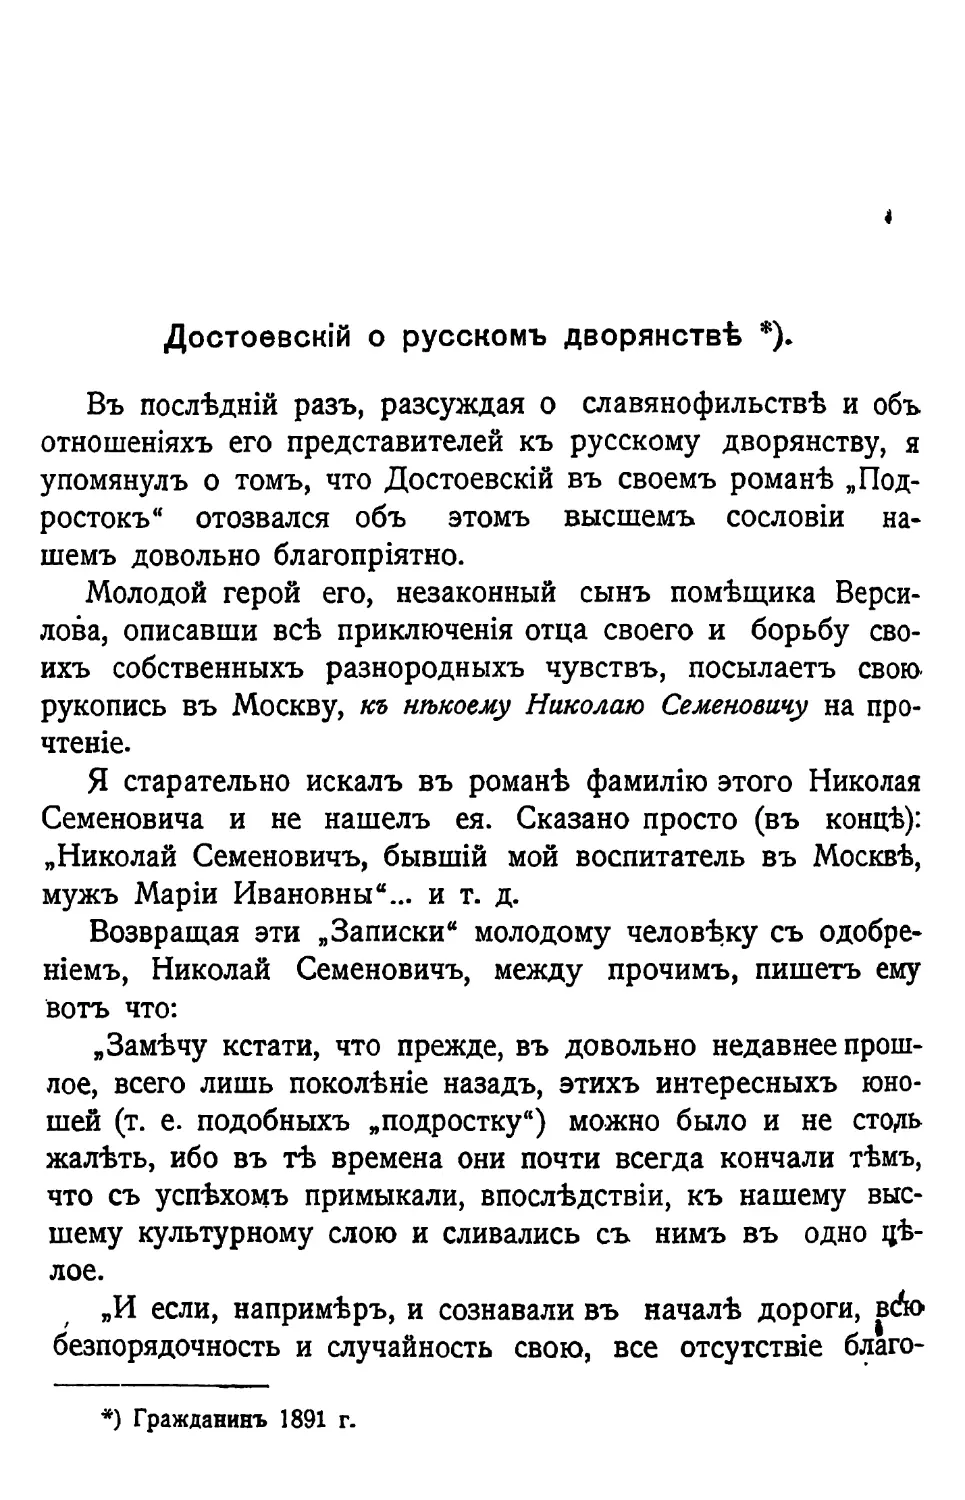 Достоевский о русском дворянстве